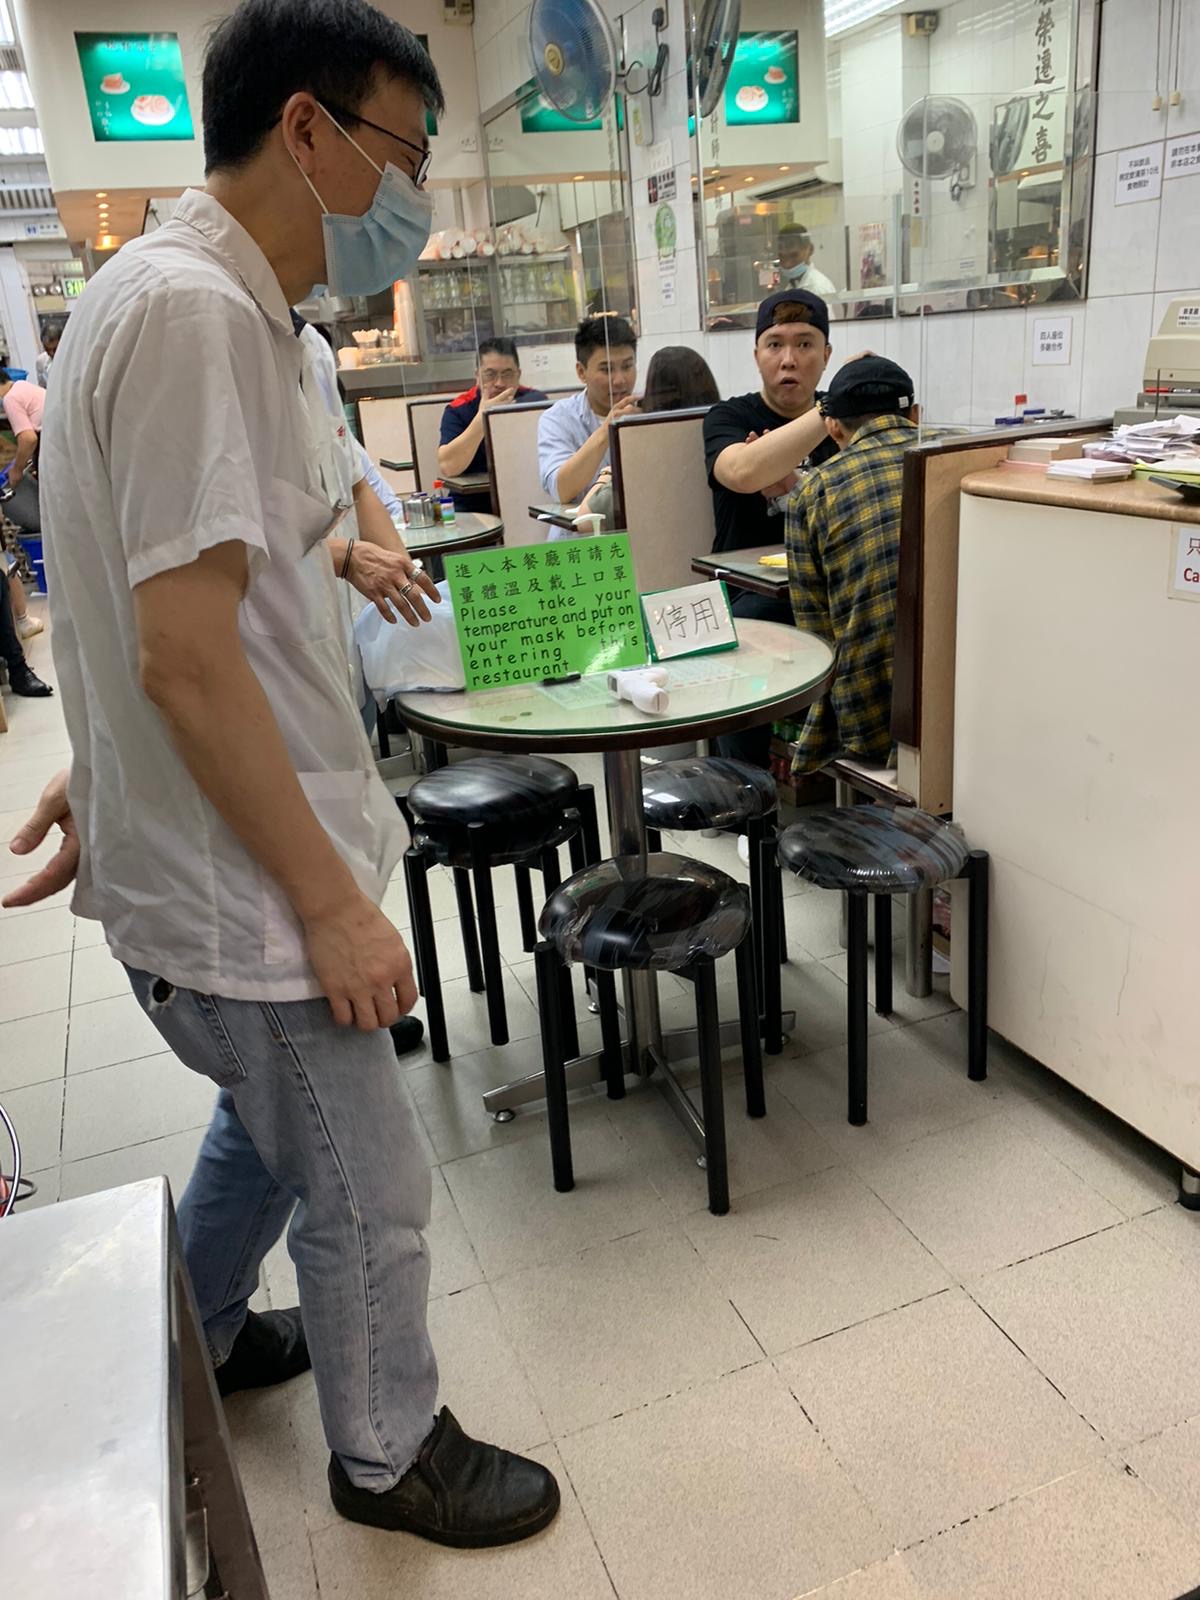 Las particiones de plexiglás separan las mesas en el Kam Fung Cafe en Hong Kong el 20 de mayo de 2020.